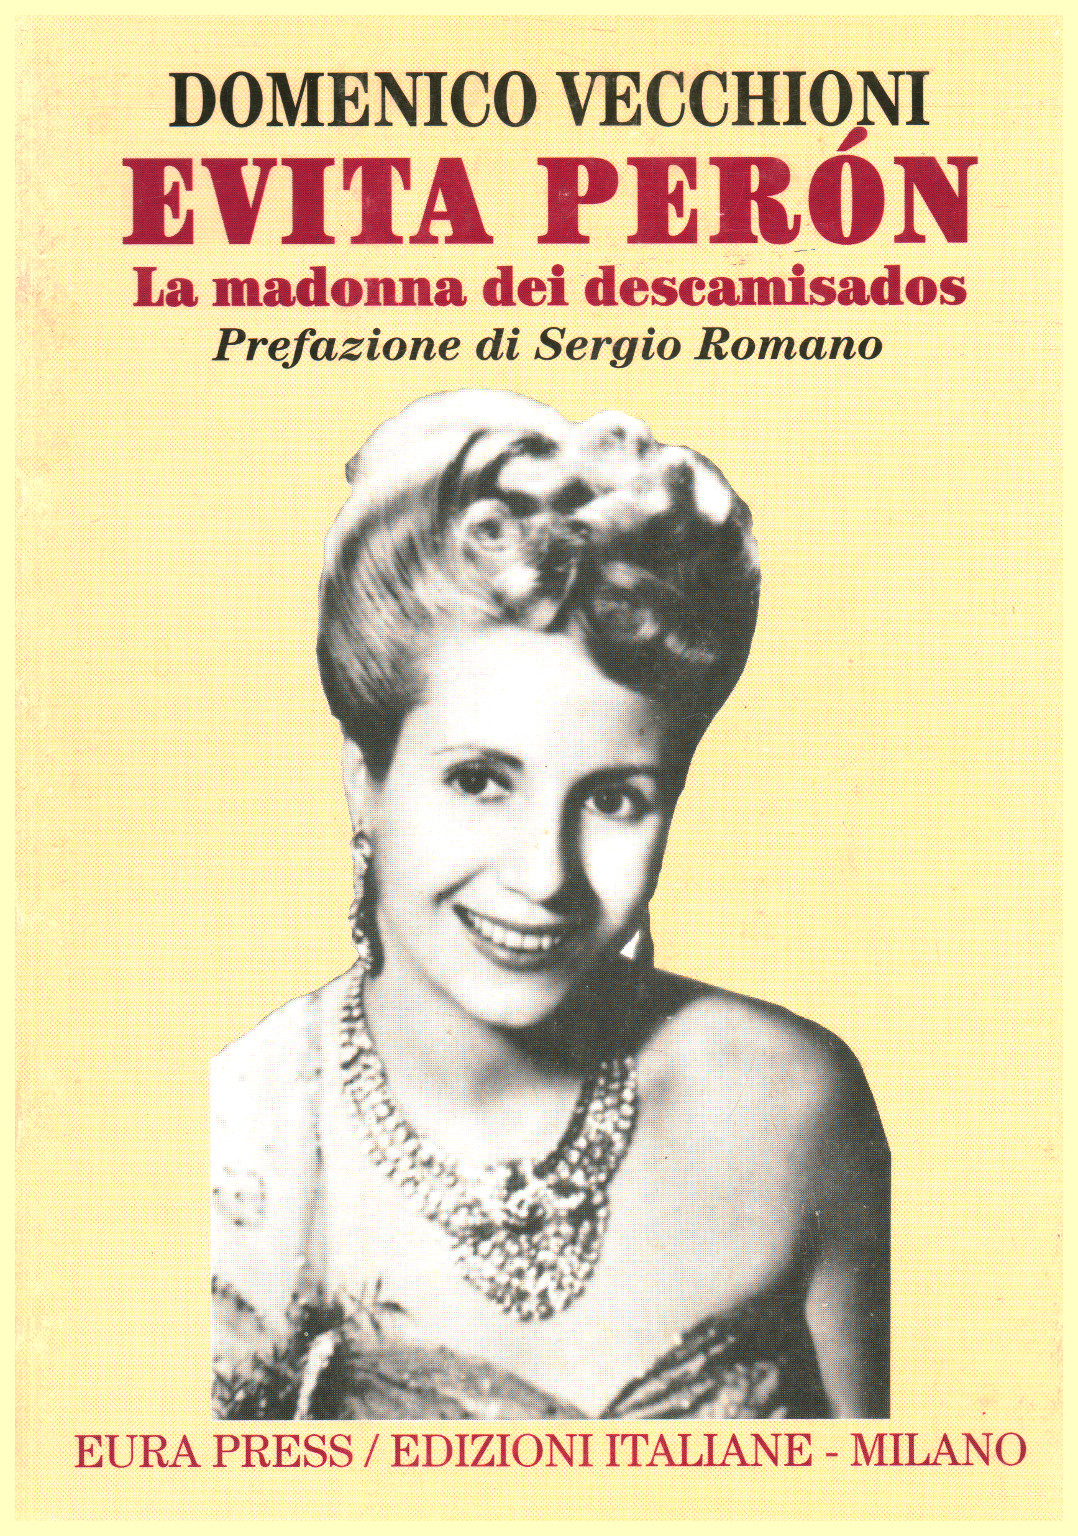 Evita Perón, s.a.